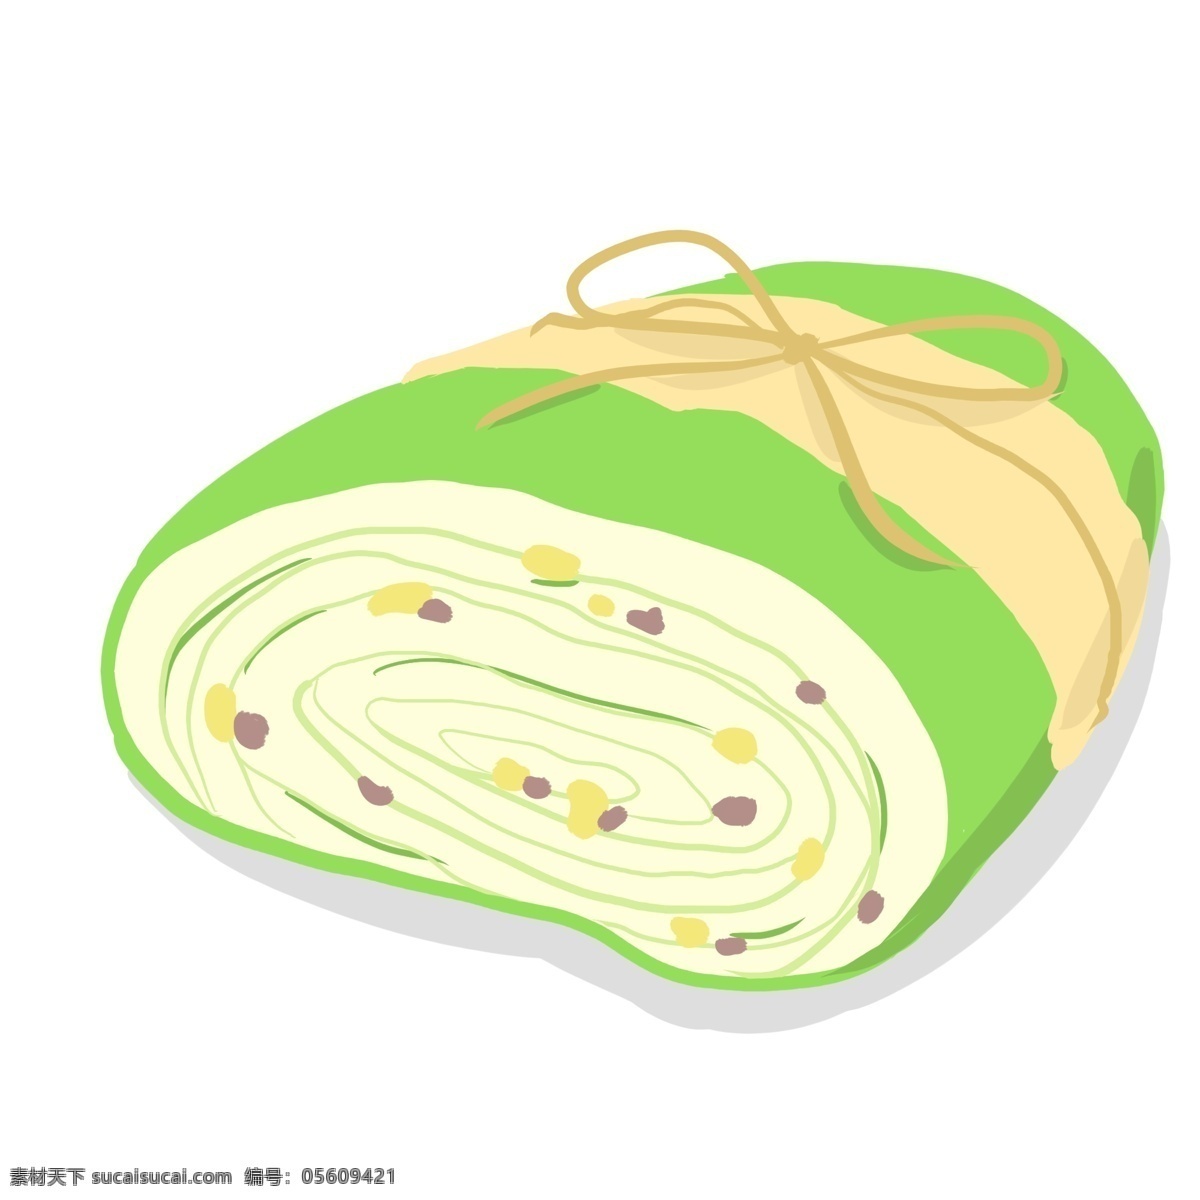 美食 蛋糕 瑞士 卷 卡通 瑞士卷 绿色 夹心 面包